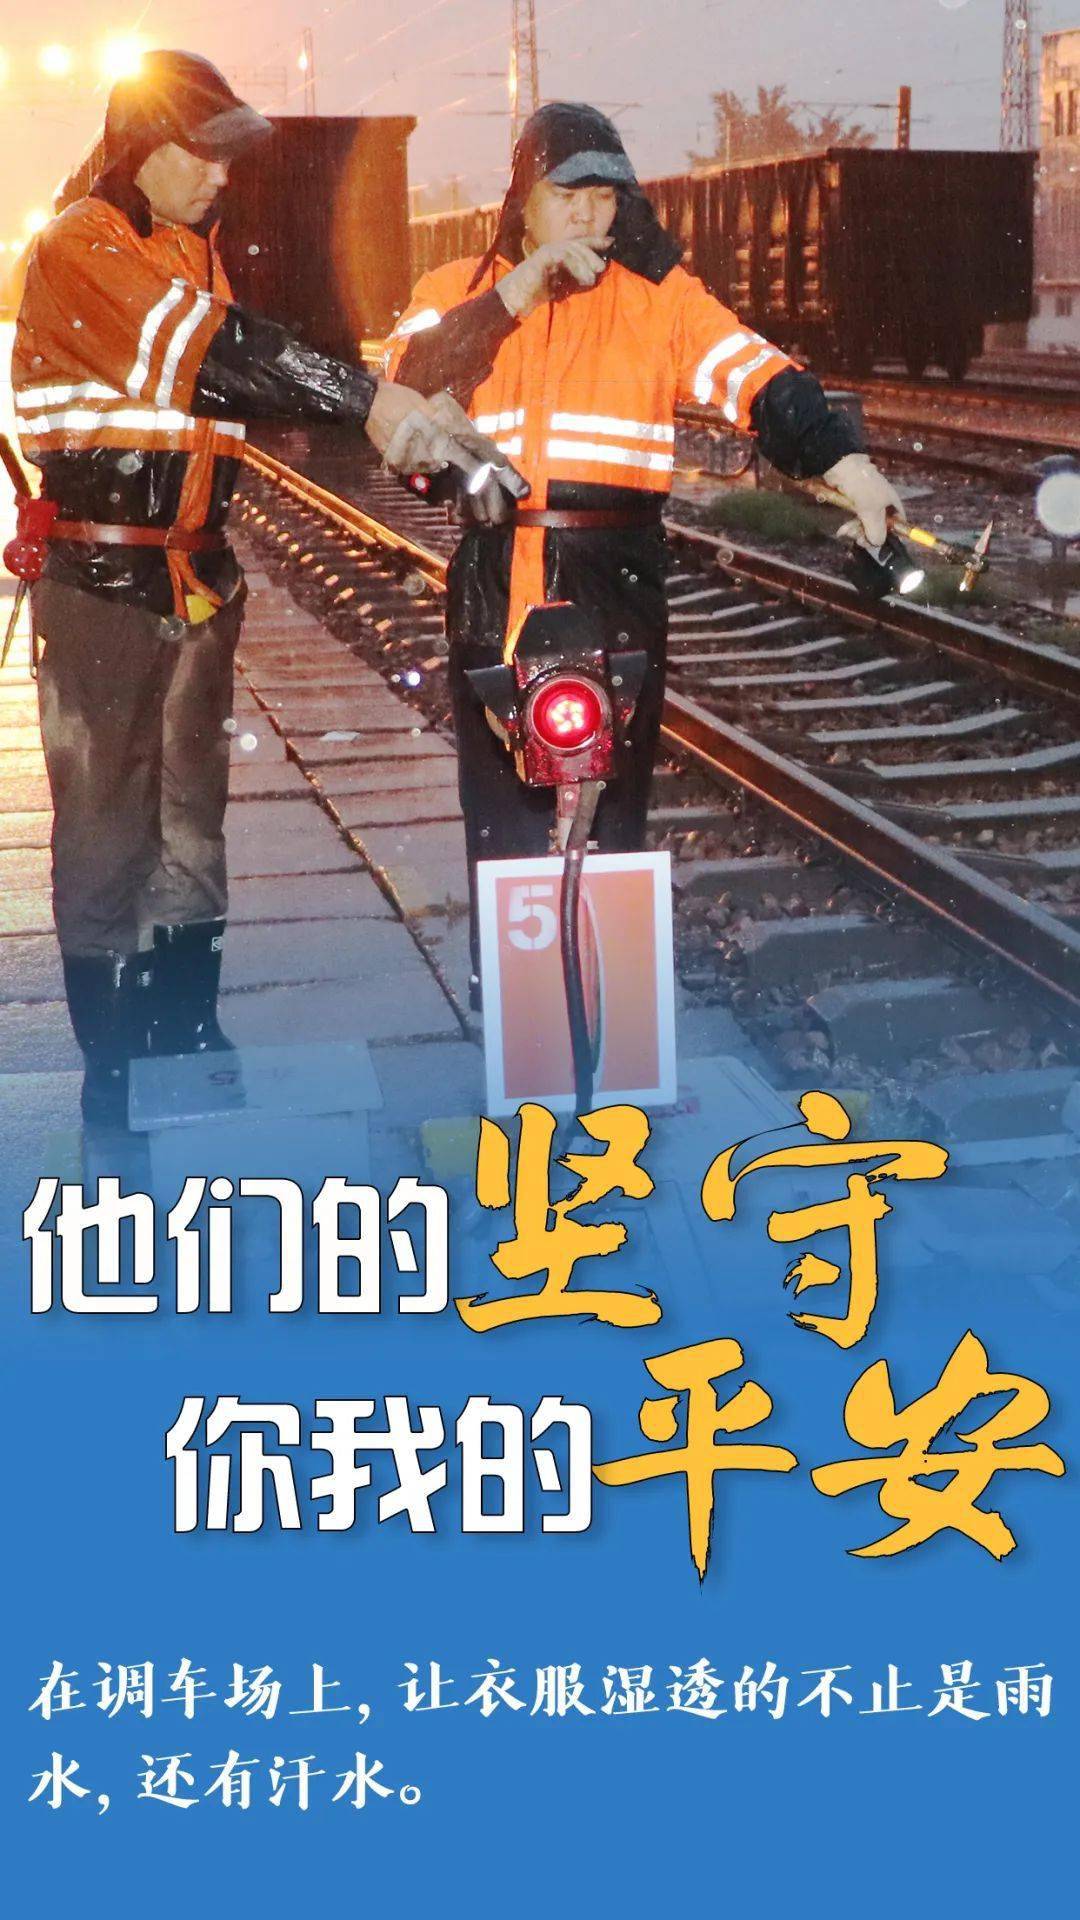 安全有序 北京局集团公司干部职工 冒雨坚守在各自岗位上 这组海报 离